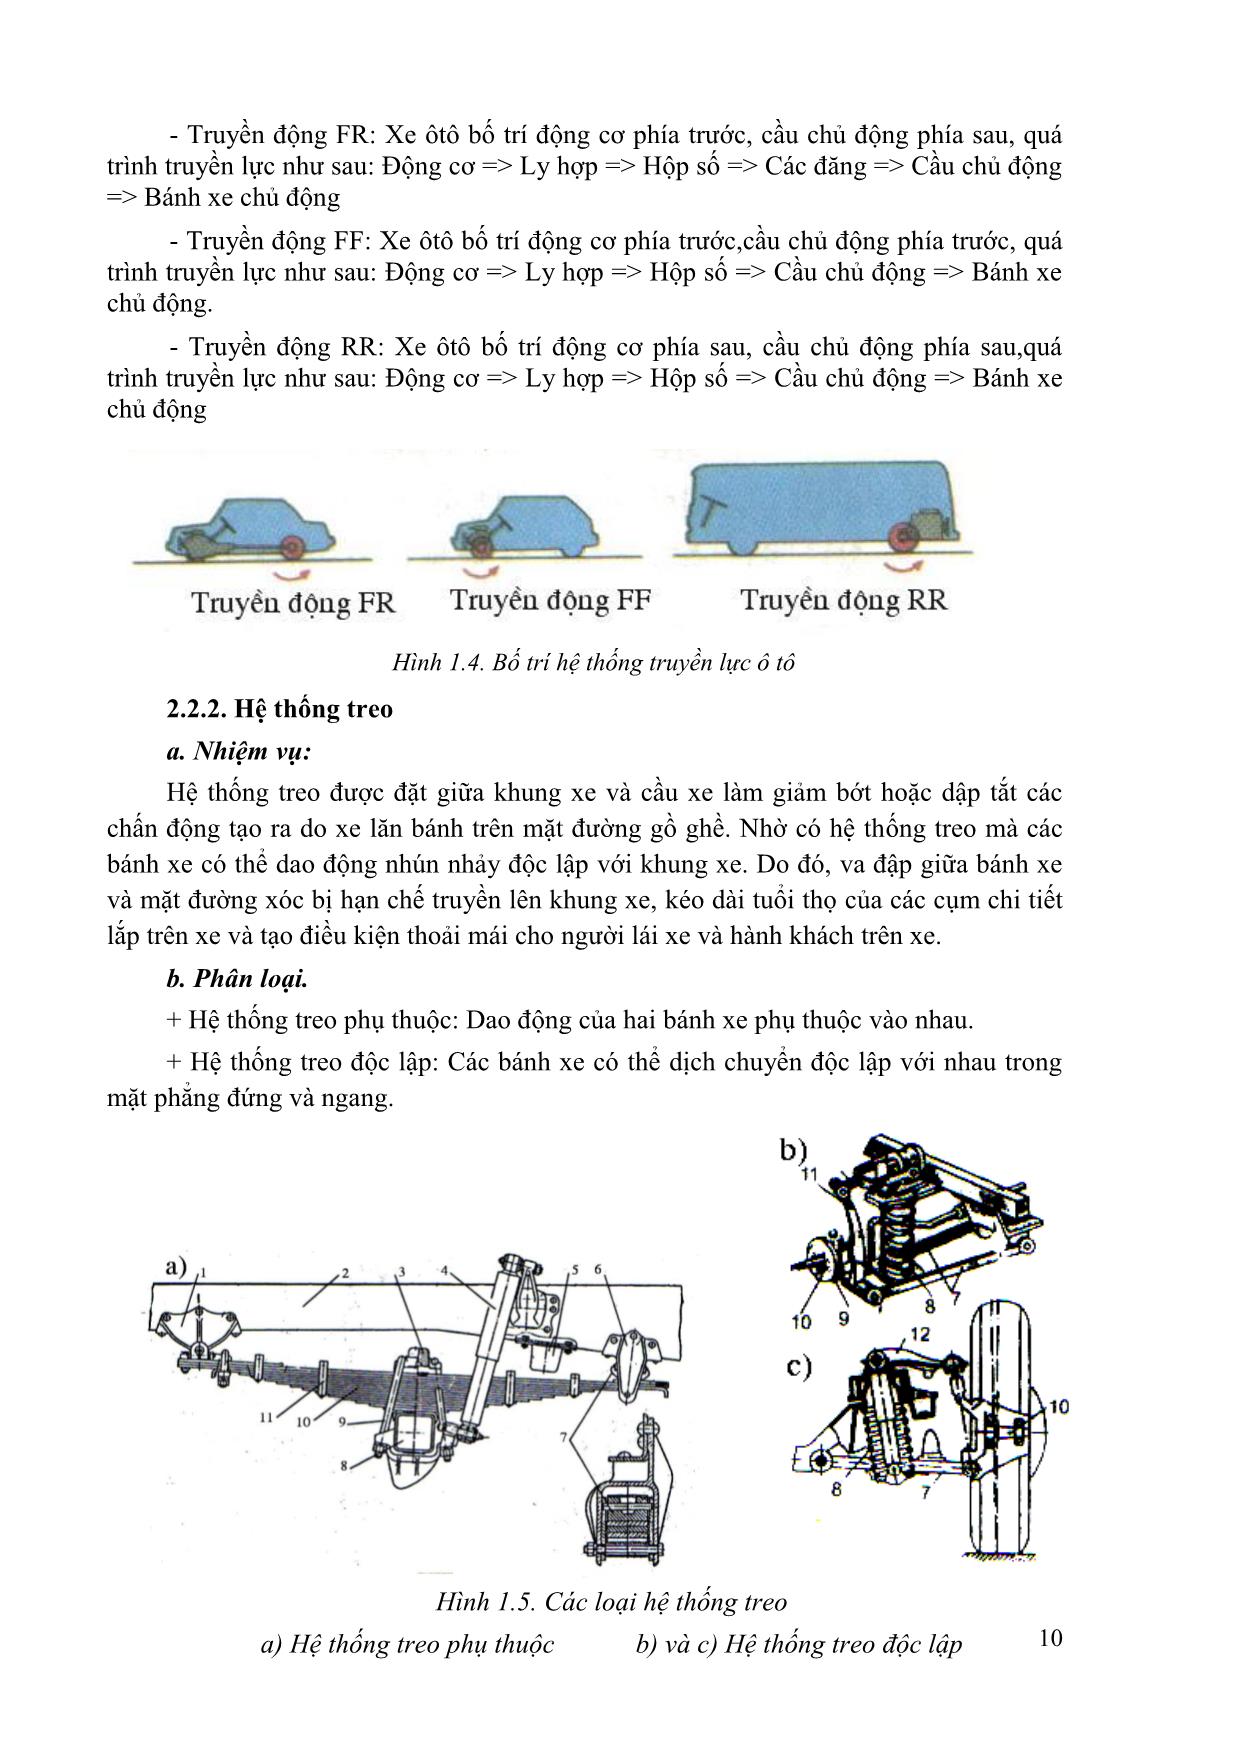 Giáo trình mô đun Kỹ thuật chung về ô tô và công nghệ sửa chữa trang 8